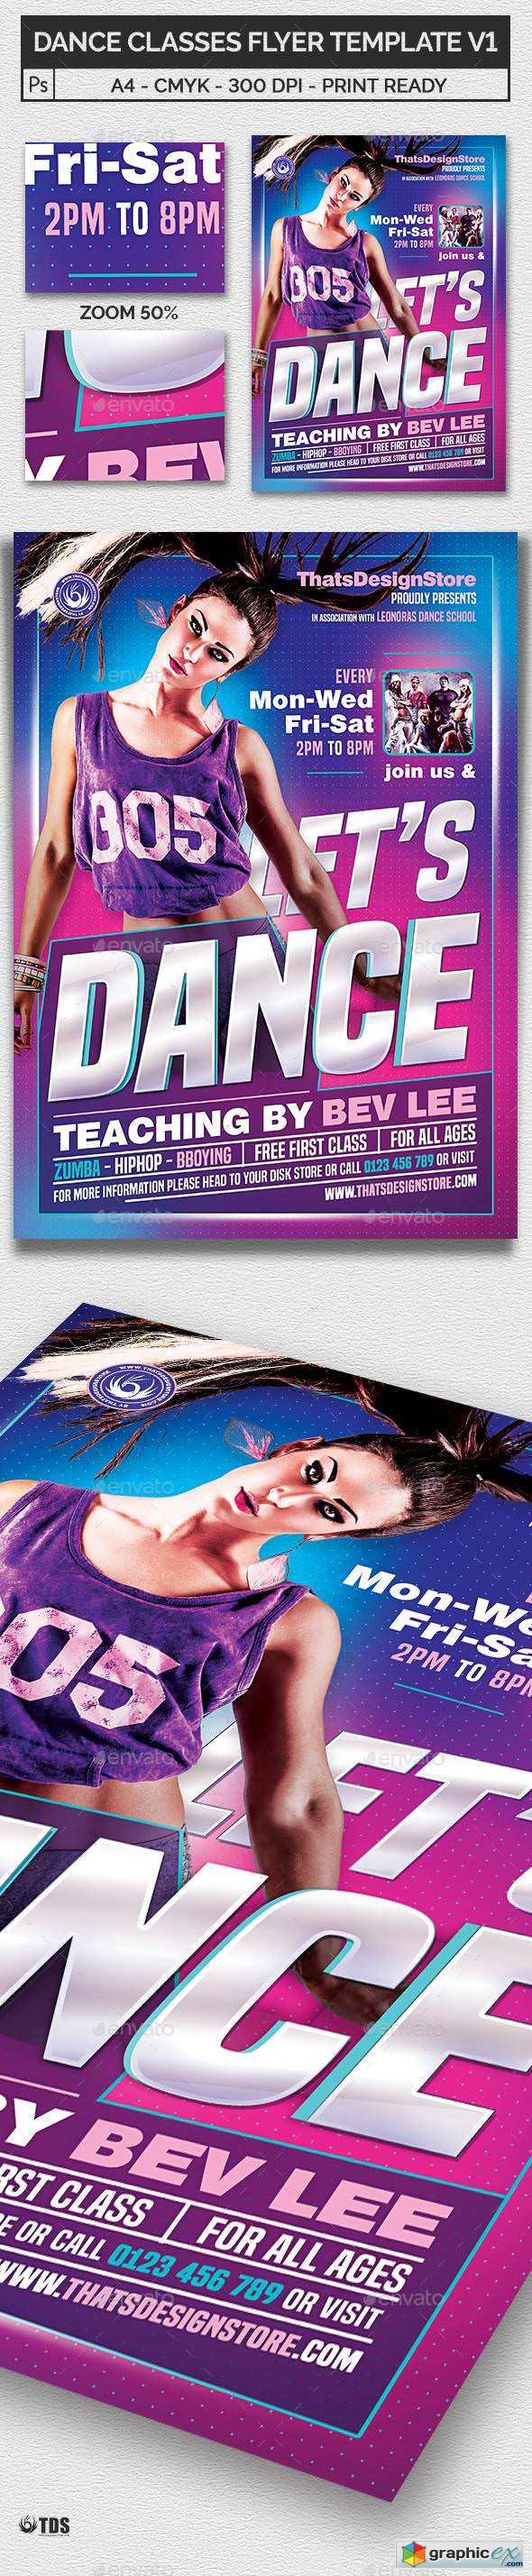 Dance Classes Flyer Template V1